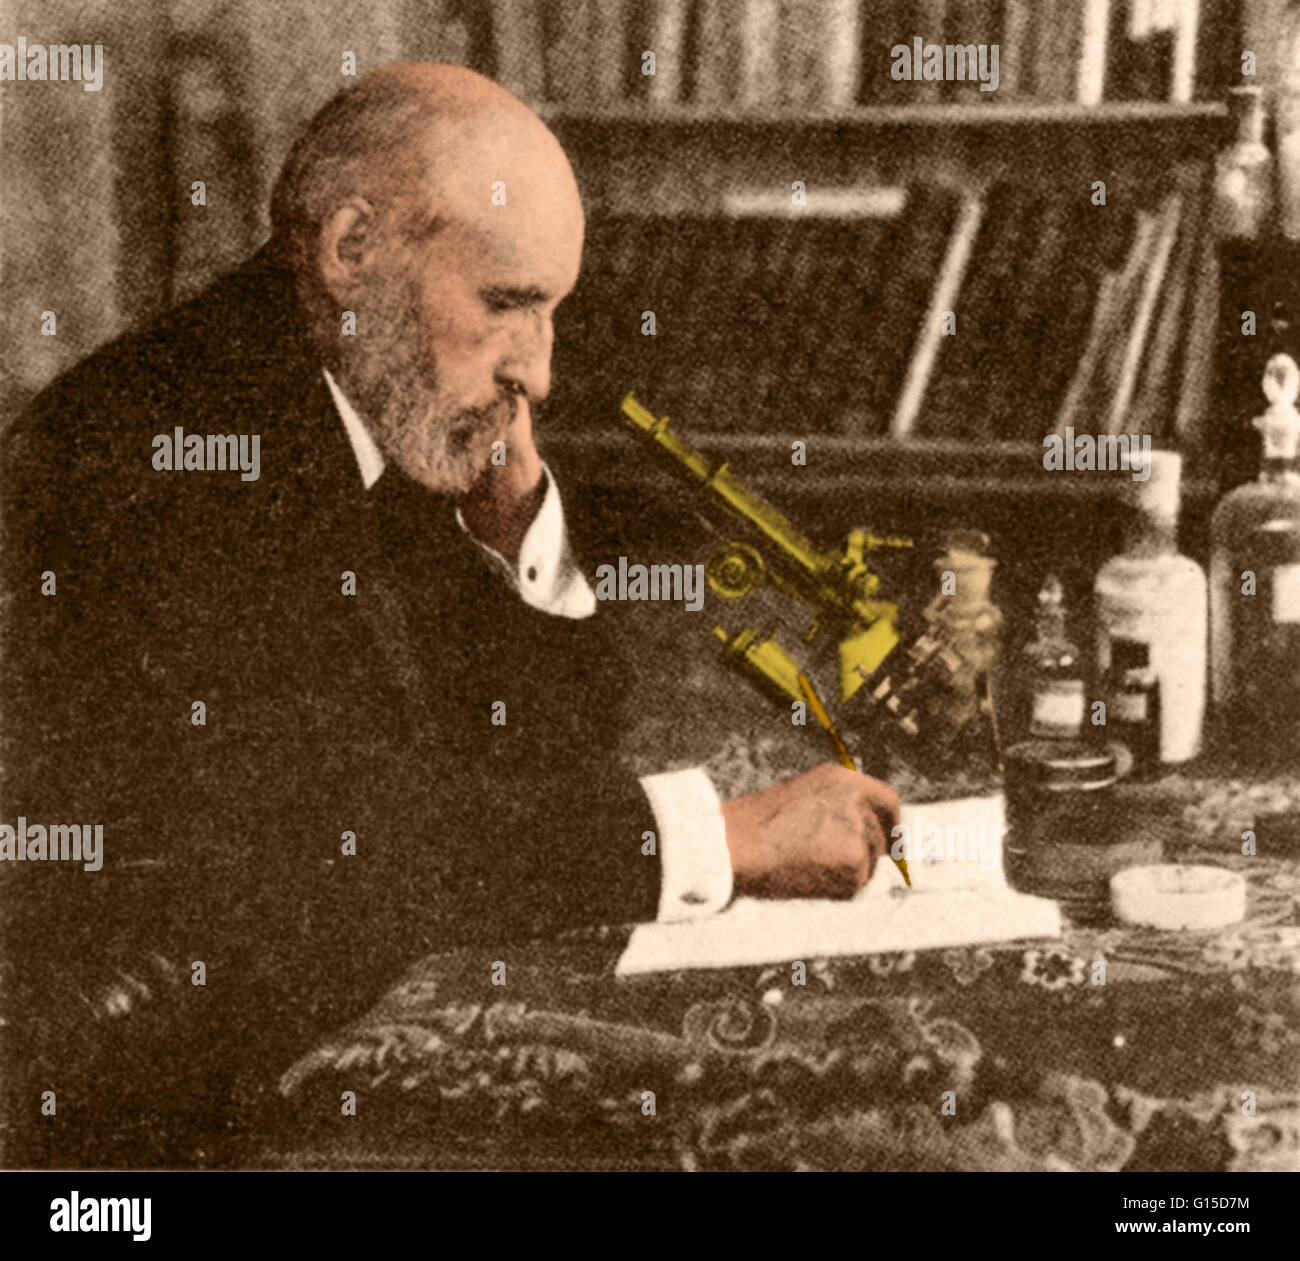 Santiago Ramón y Cajal (1852-1934) était un médecin espagnol, histologiste, neuroscientifique, et lauréat du prix Nobel (1906). Ses travaux précurseurs sur la structure microscopique du cerveau étaient original : il est considéré par beaucoup comme le père de la moder Banque D'Images